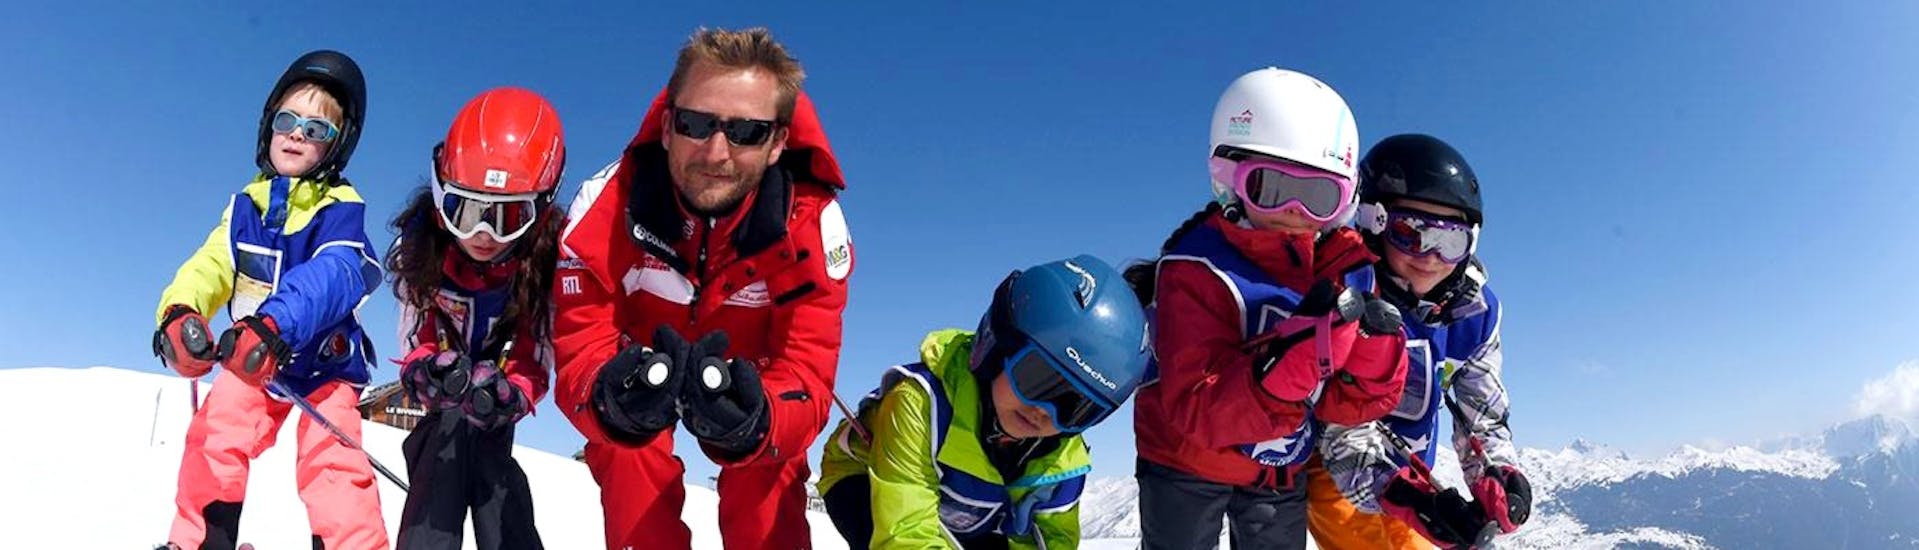 Bambini che si divertono sulle piste con il loro maestro durante le lezioni di sci per bambini per sciatori esperti della Scuola di sci ESF Serre Chevalier - Villeneuve.